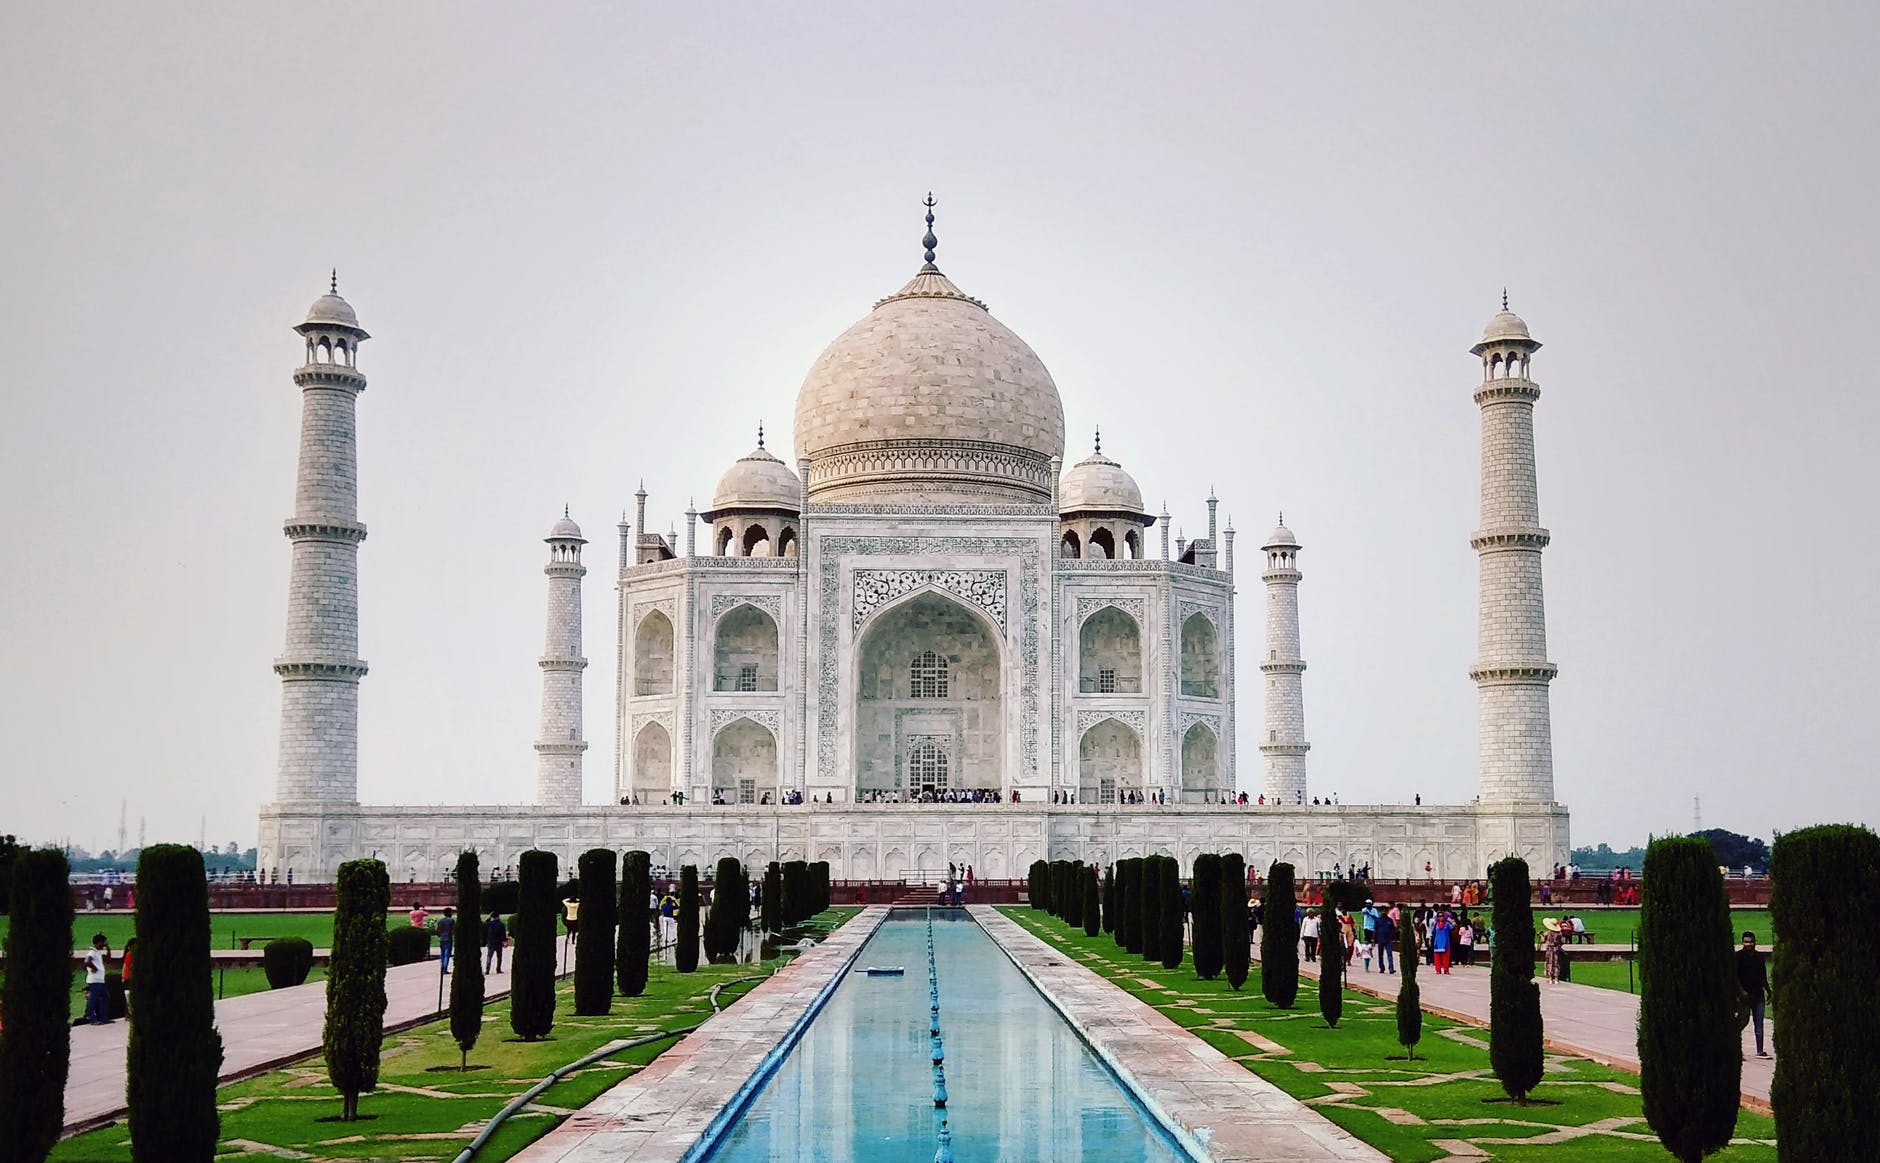 ताज महल पर 10 लाइन निबंध
